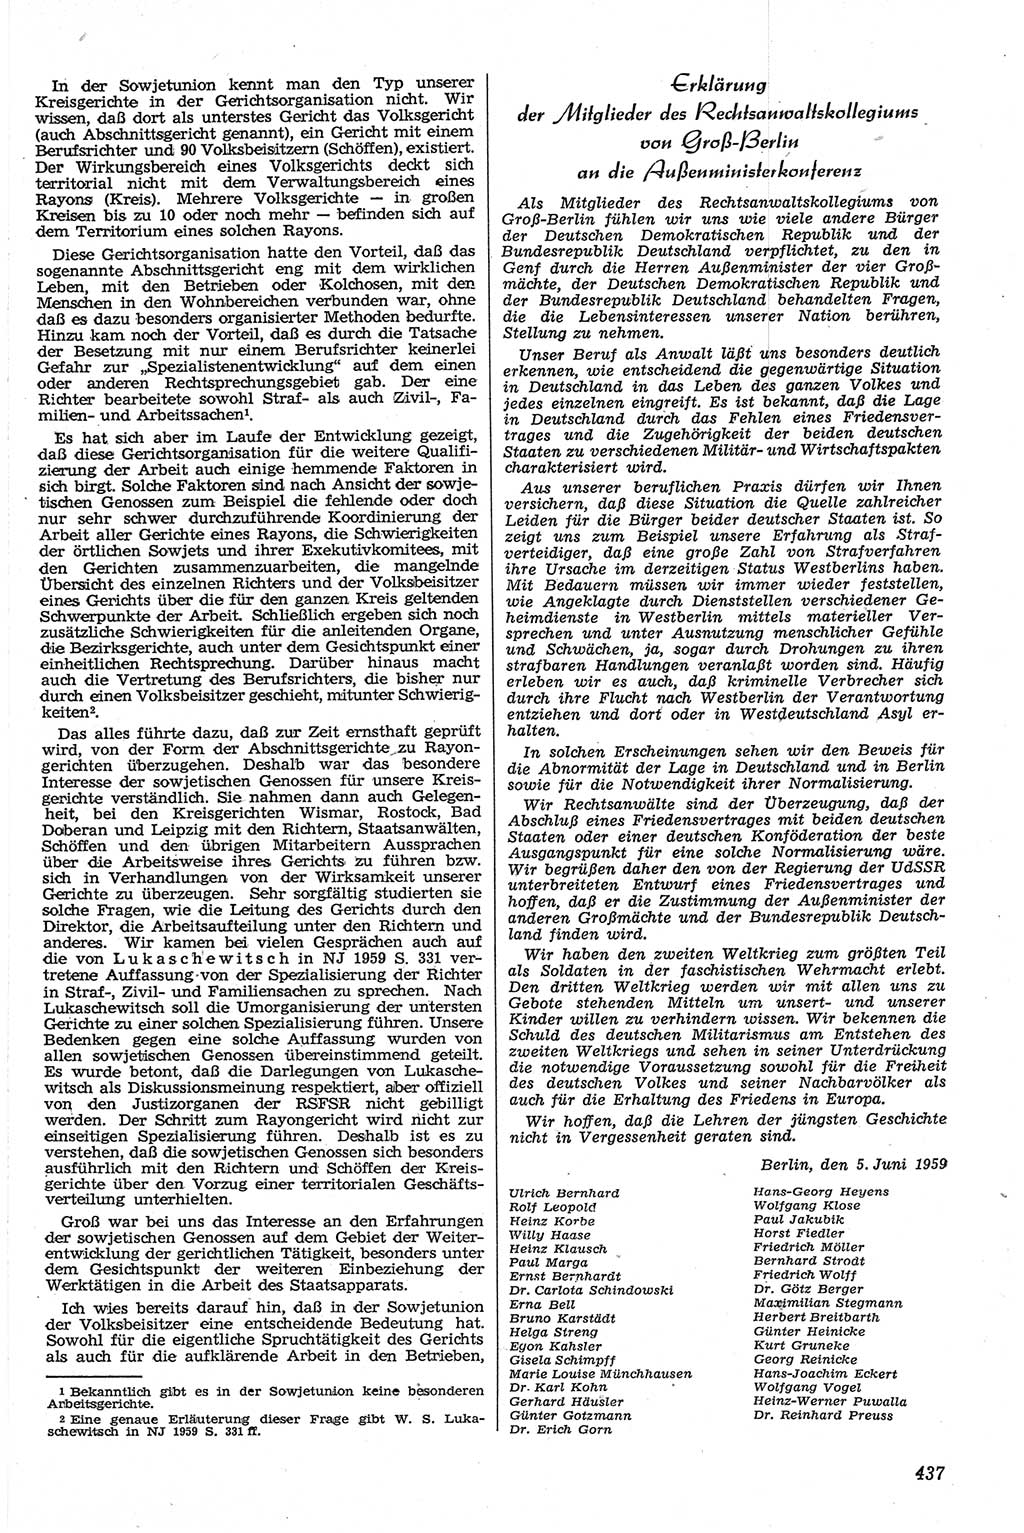 Neue Justiz (NJ), Zeitschrift für Recht und Rechtswissenschaft [Deutsche Demokratische Republik (DDR)], 13. Jahrgang 1959, Seite 437 (NJ DDR 1959, S. 437)